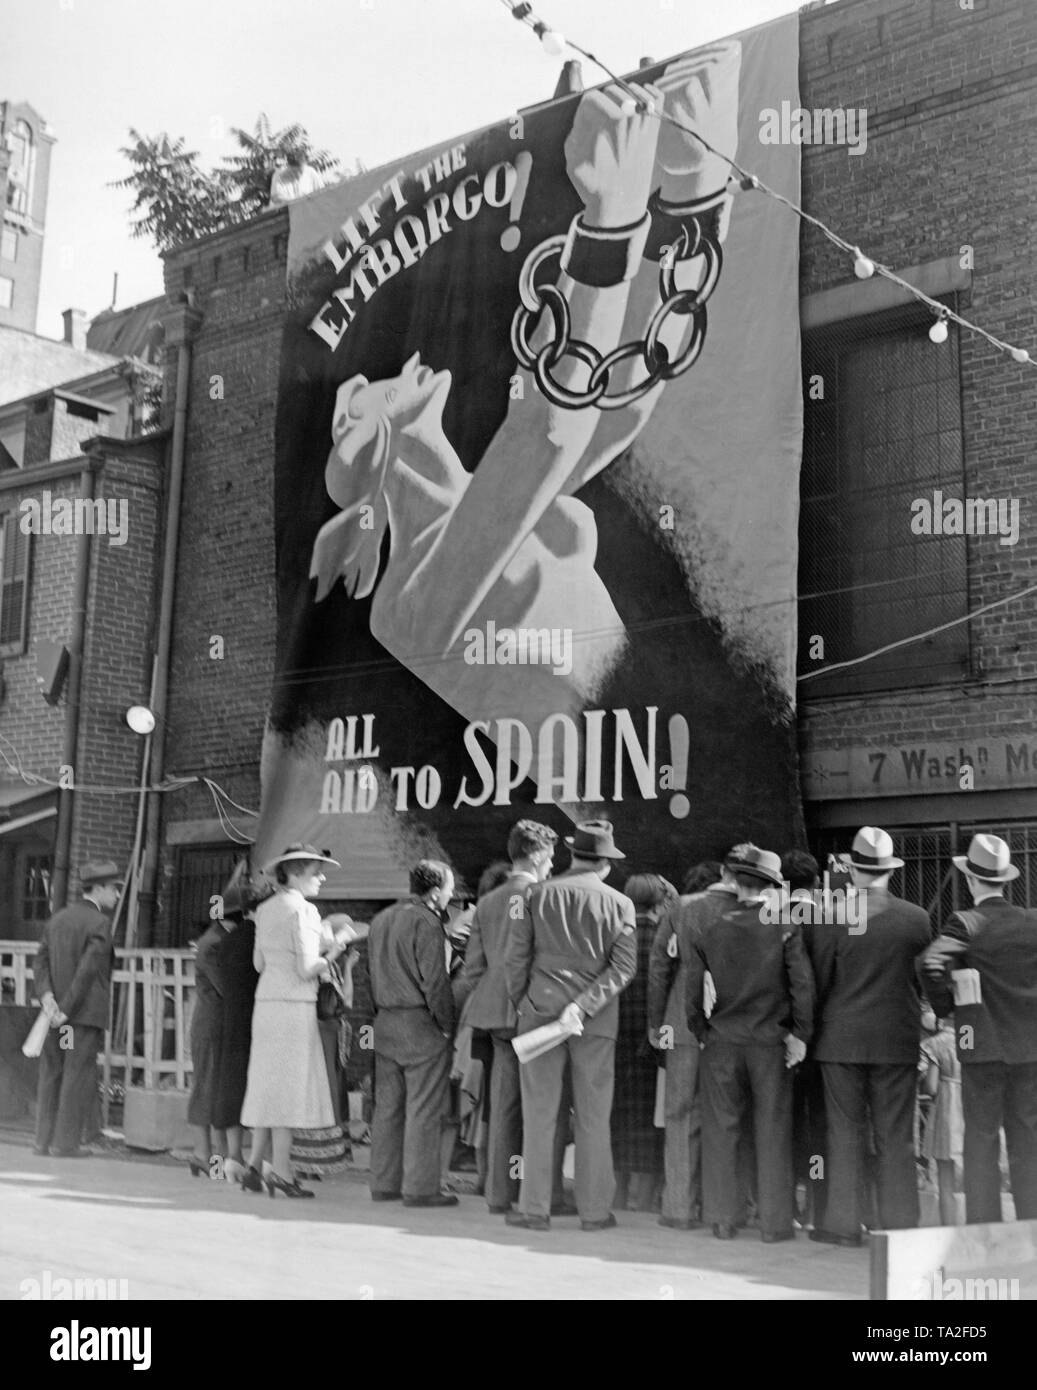 Photo d'une affiche publicitaire à l'entrée d'un événement de bienfaisance contre l'embargo sur les armes de la Deuxième République espagnole et pour l'aide à l'Espagne à la Washington Mews, Greenwich Village, New York, près de Washington Square Park et l'Université de New York en 1938. L'affiche montre une femme héroïque tente de briser ses chaînes. Banque D'Images